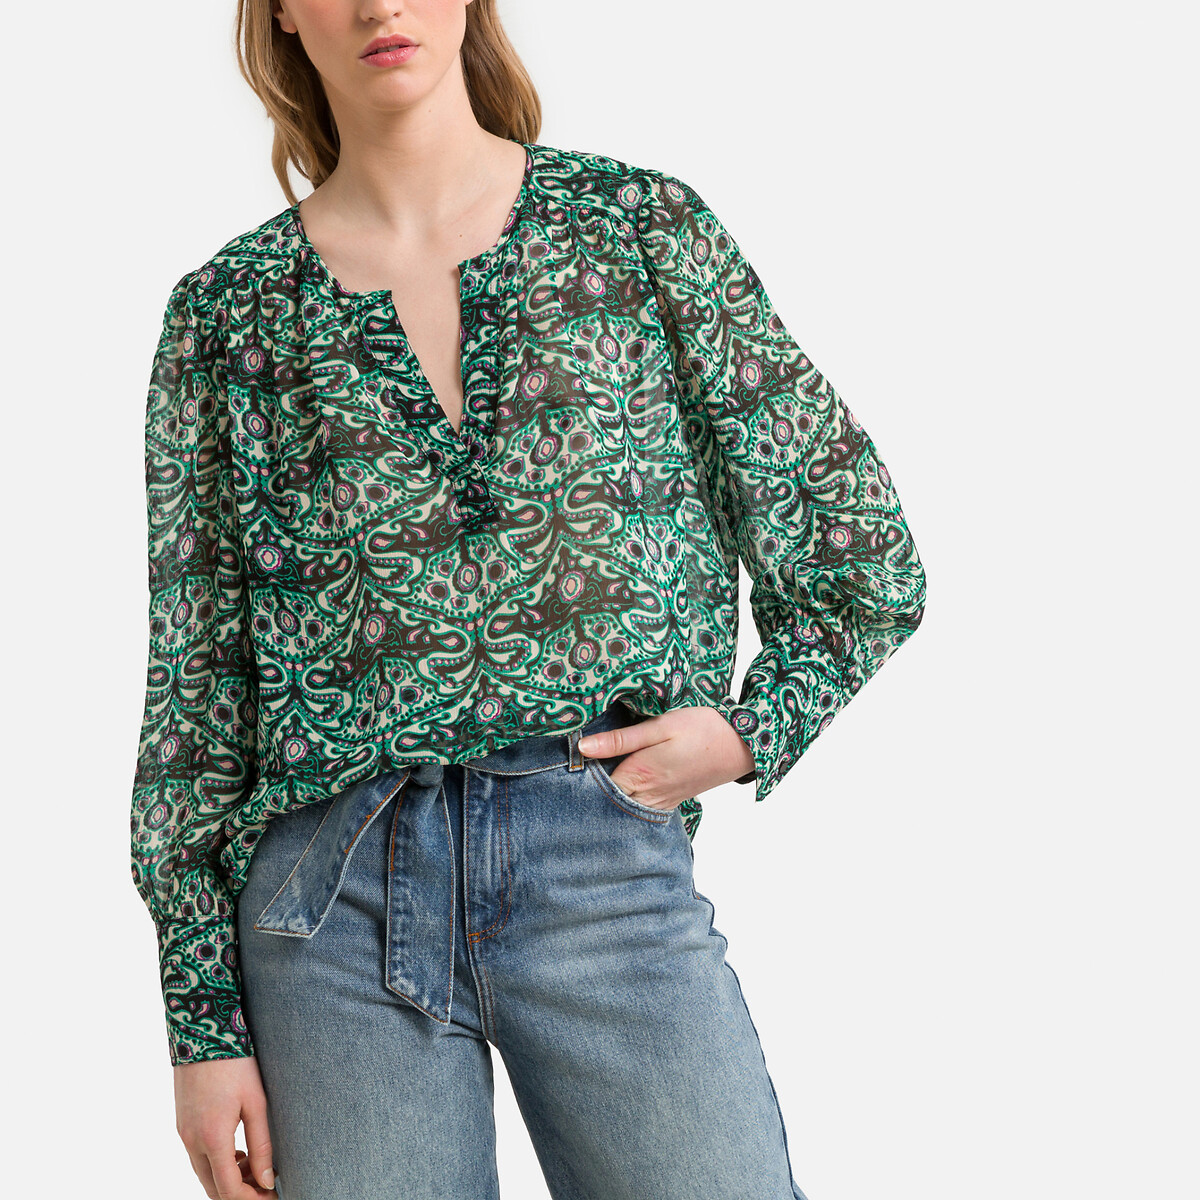 Блузка с принтом и длинными рукавами 2(M) зеленый блузка с принтом и длинными рукавами 2 m зеленый